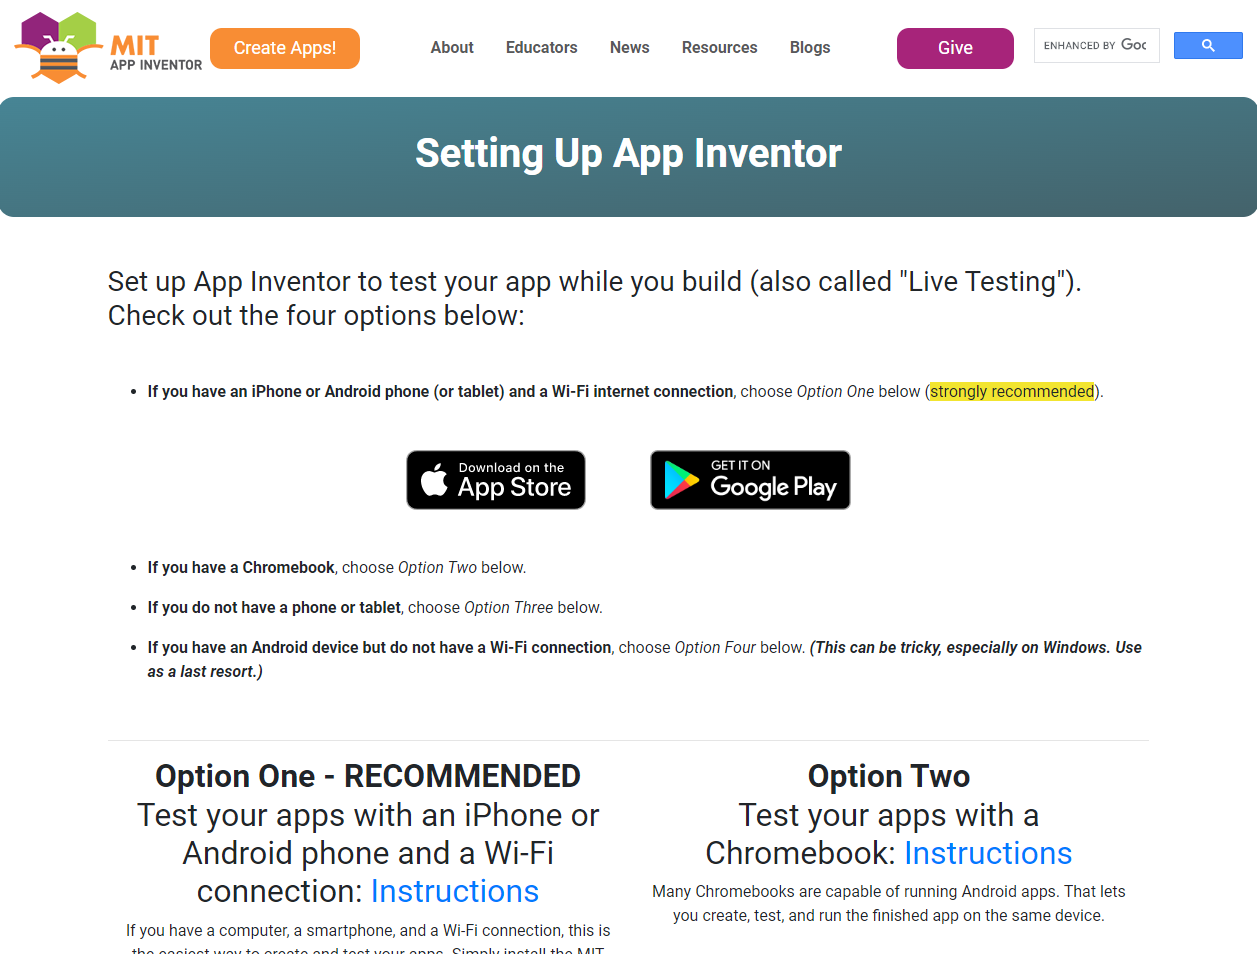 Официальный сайт приложения MIT App Inventor